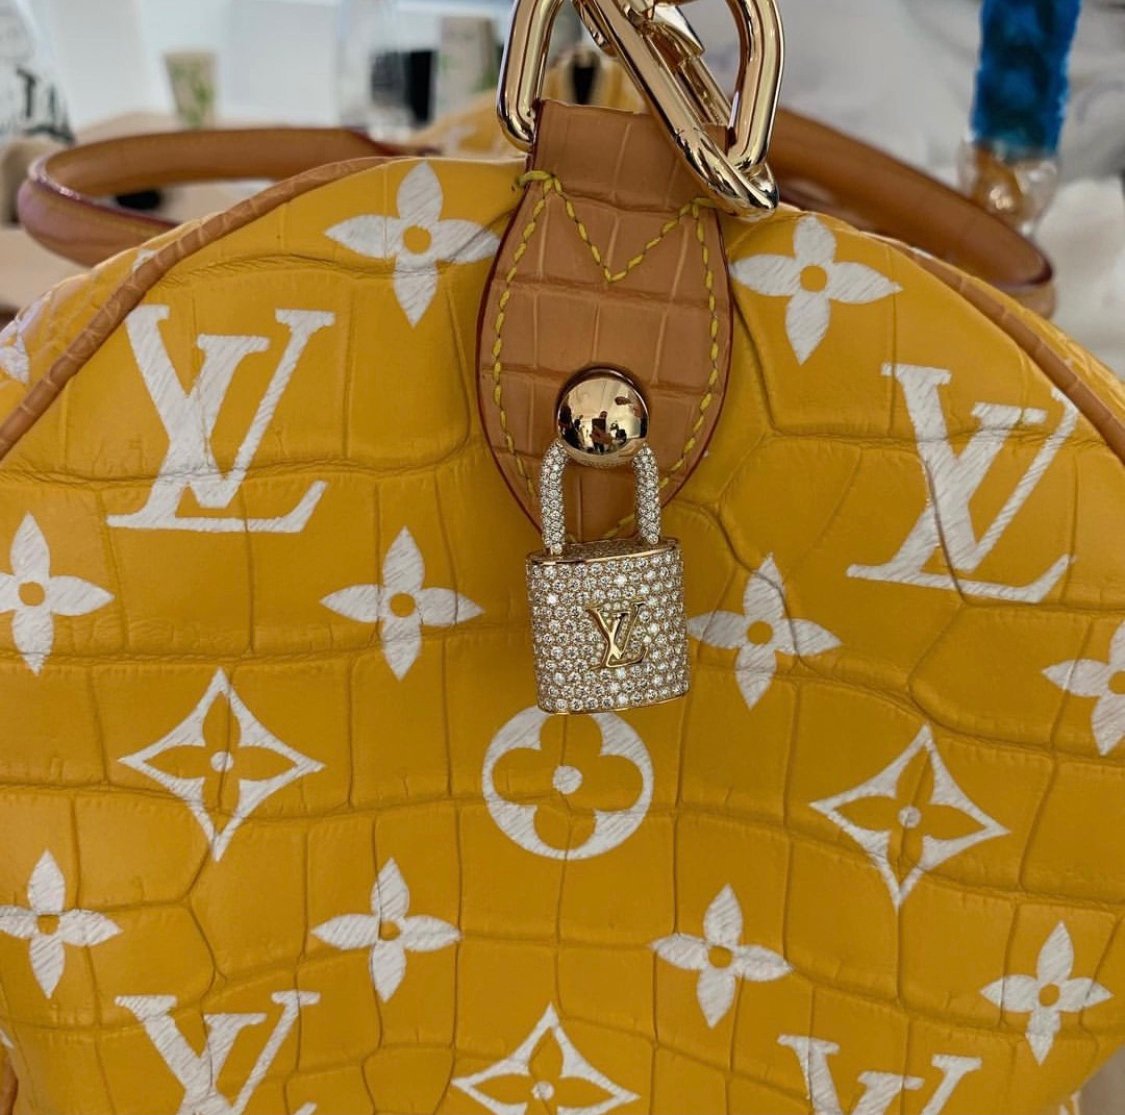 1M LV bag, what we think? : r/handbags